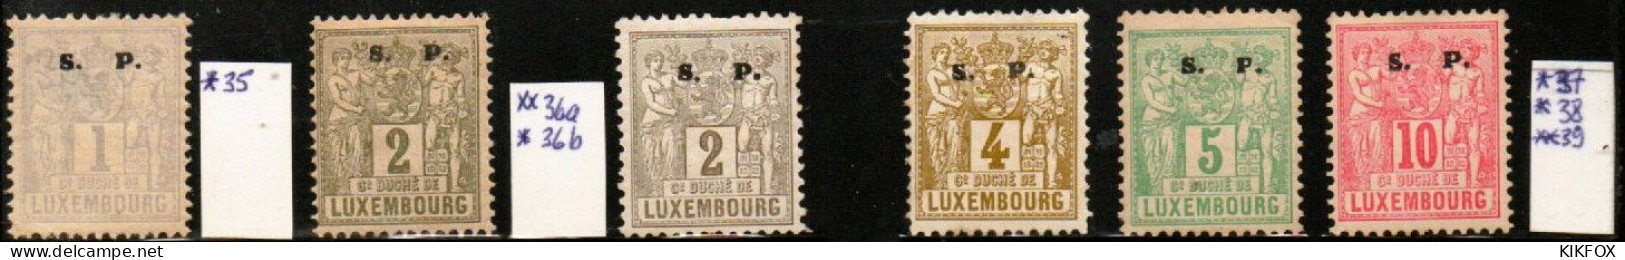 Luxembourg , Luxemburg ,1882, MI 35 - 39   FREIMARKEN ALLEGORIE, S.P LARGE, UNGEBRAUCHT, CHARNIERE - Servizio